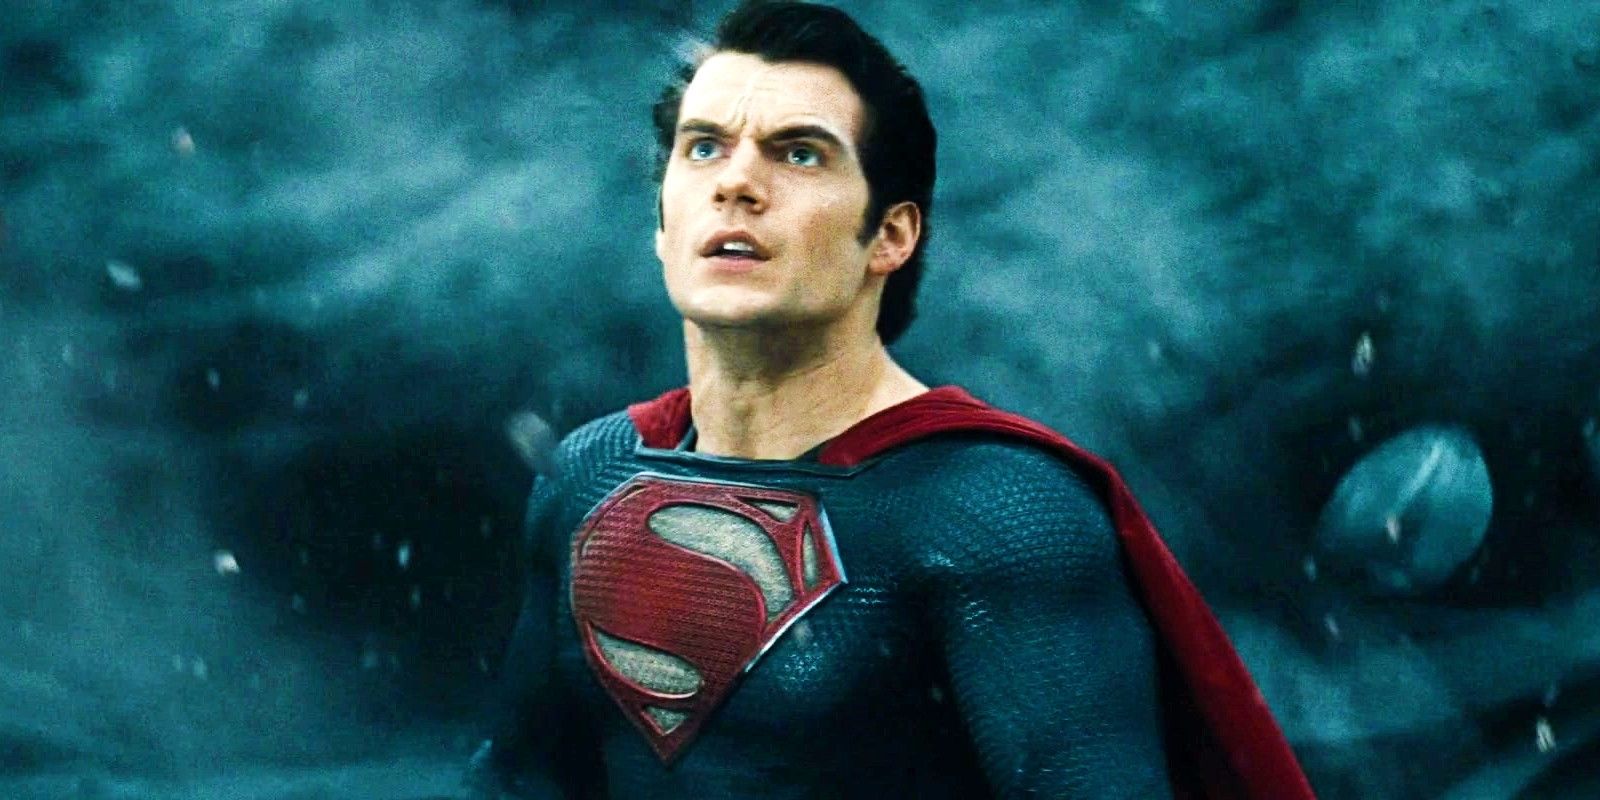 El tan esperado villano de DC, Brainiac, se enfrenta al nuevo Superman de James Gunn en el tráiler de fans de la película de DC